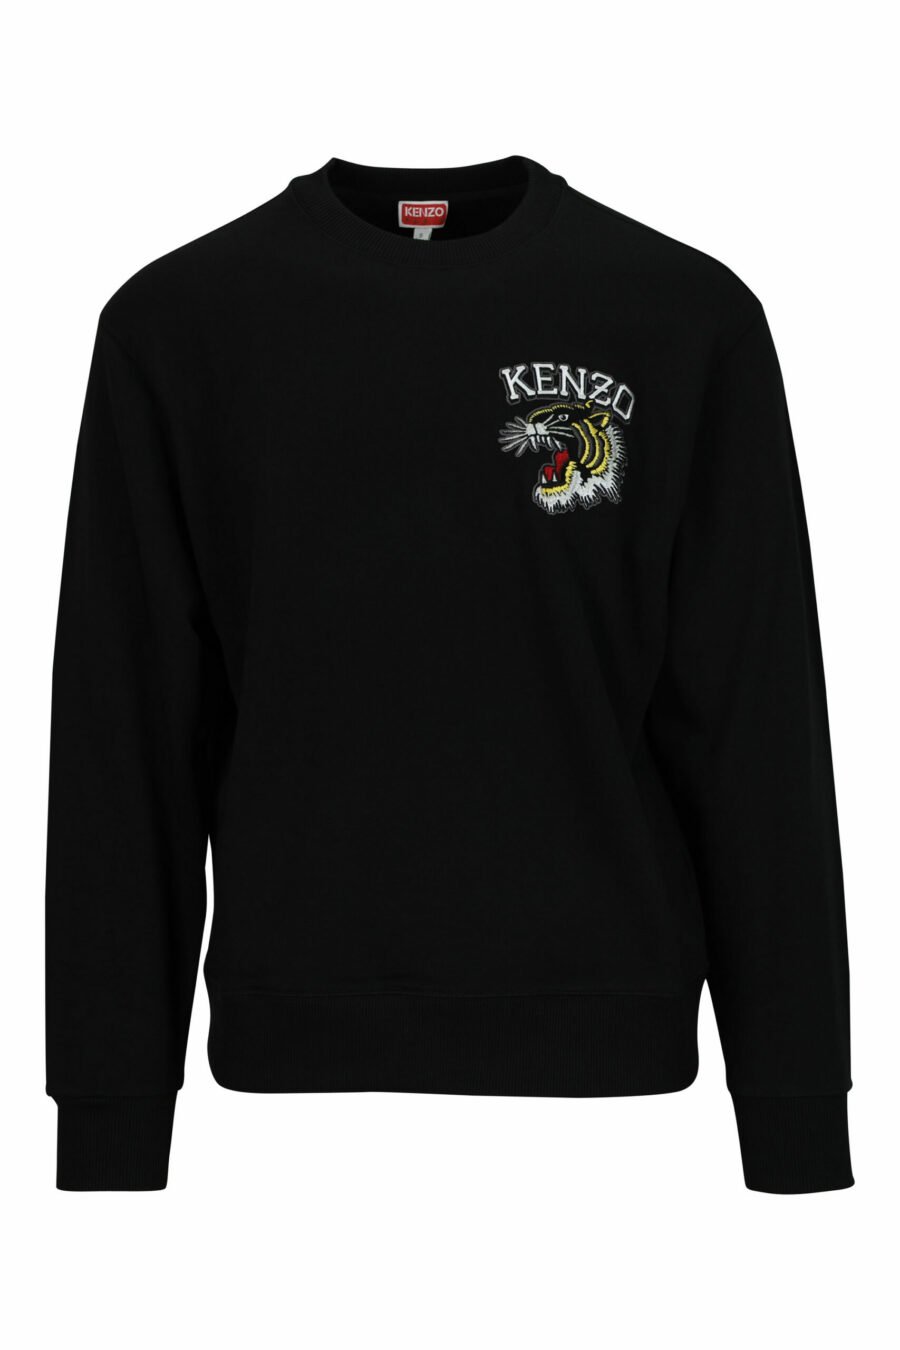 Schwarzes Sweatshirt in Übergröße mit kleinem, geprägtem Tiger-Logo - 3612230571426 skaliert